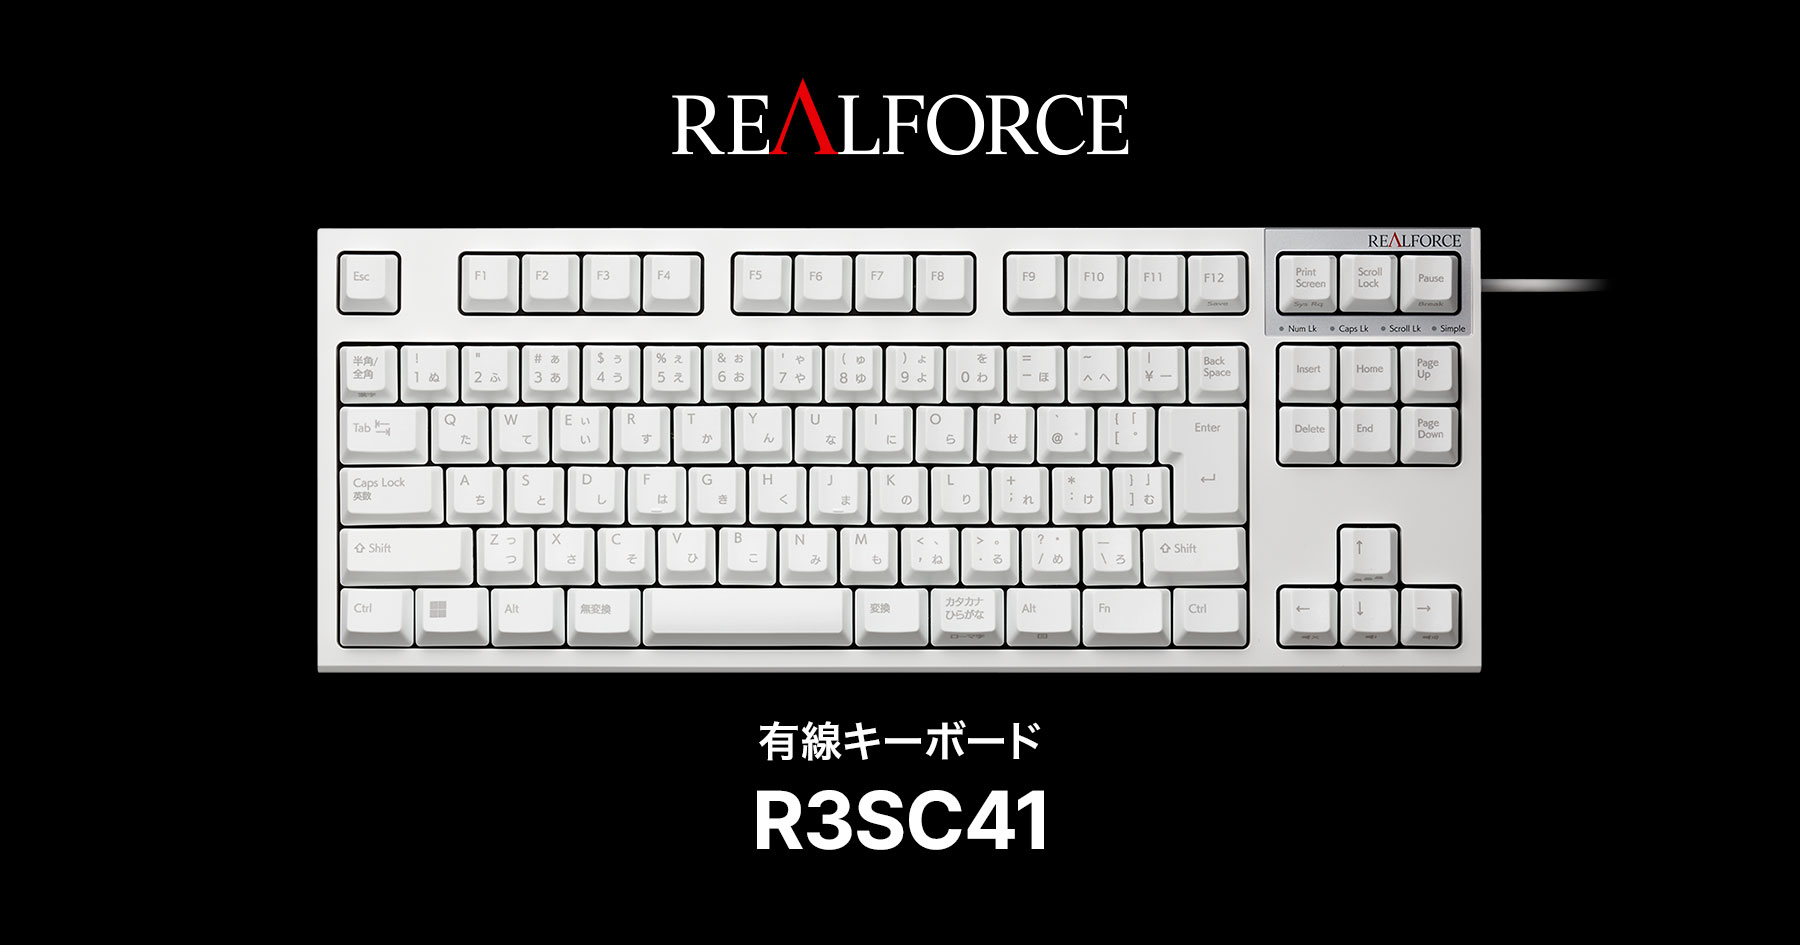 製品 : REALFORCE / R3SC41 | REALFORCE | 日本製プレミアムキーボードの最高峰